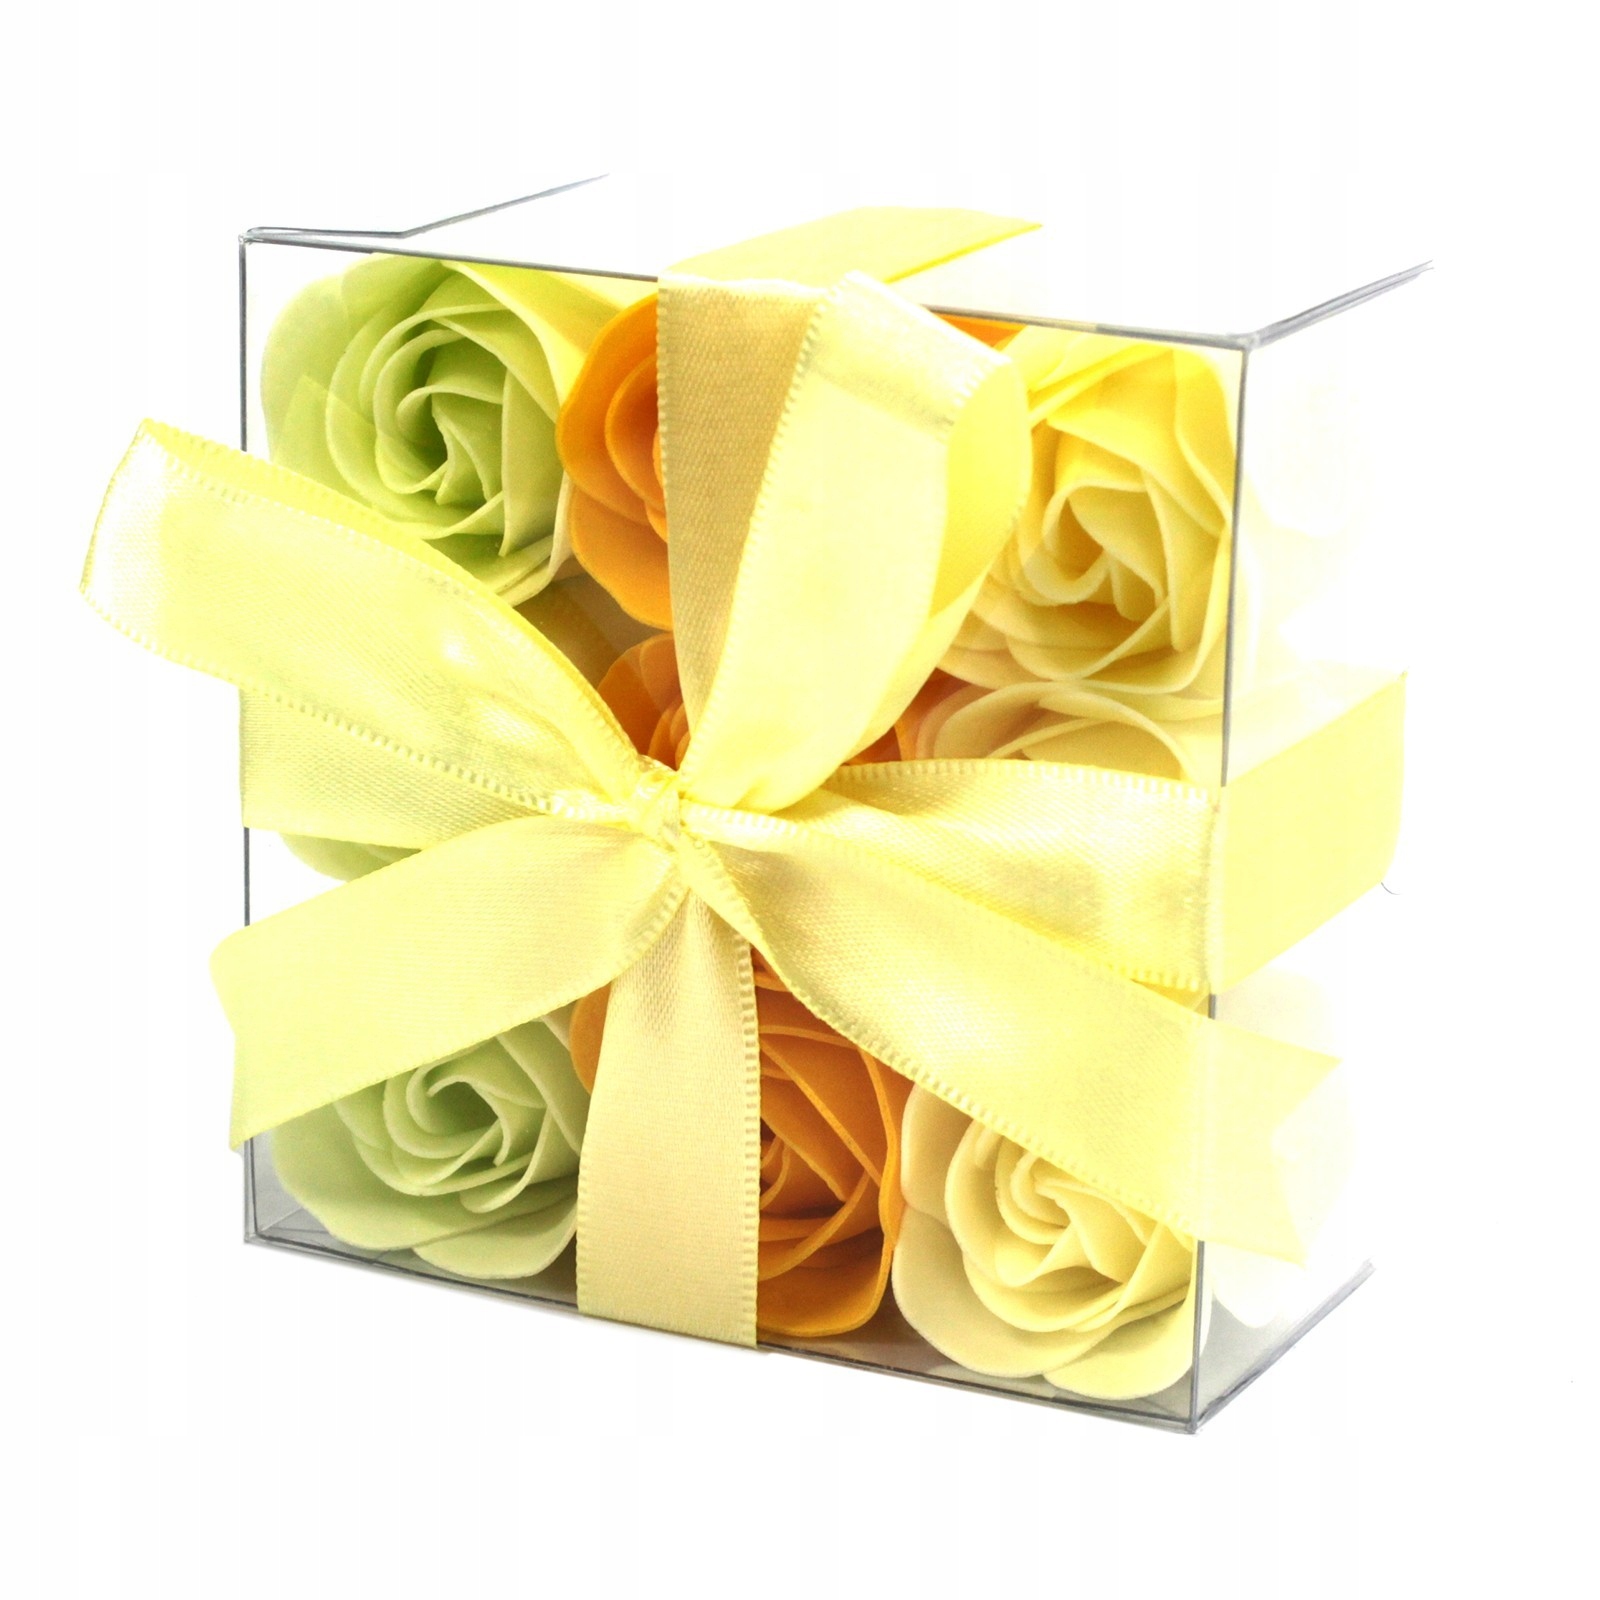 Мыло цветок подарочный. Мыло в коробках по 9 шт. Упаковать мыльные желтые тюльпаны. Мыло в коробках по 9 шт Турция. Девять подарков